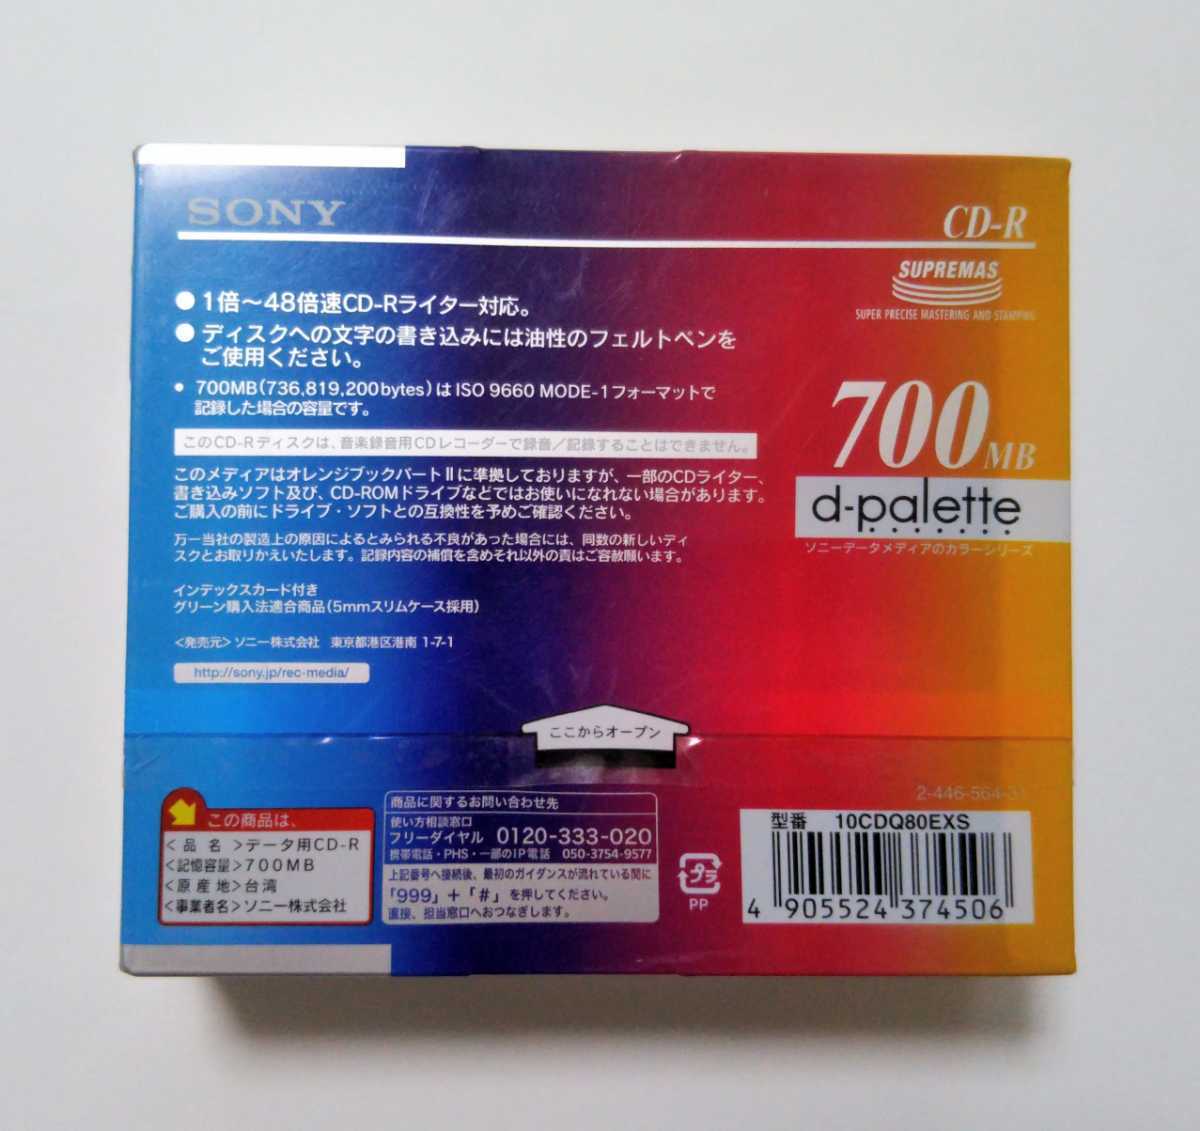 送料無料★SONY CD-R 10枚入 4パック データ用CD-R 700MB d-palette ソニー 48倍速 5mmスリムケース 5COLOR MIX データメディア 10CDQ80EXS